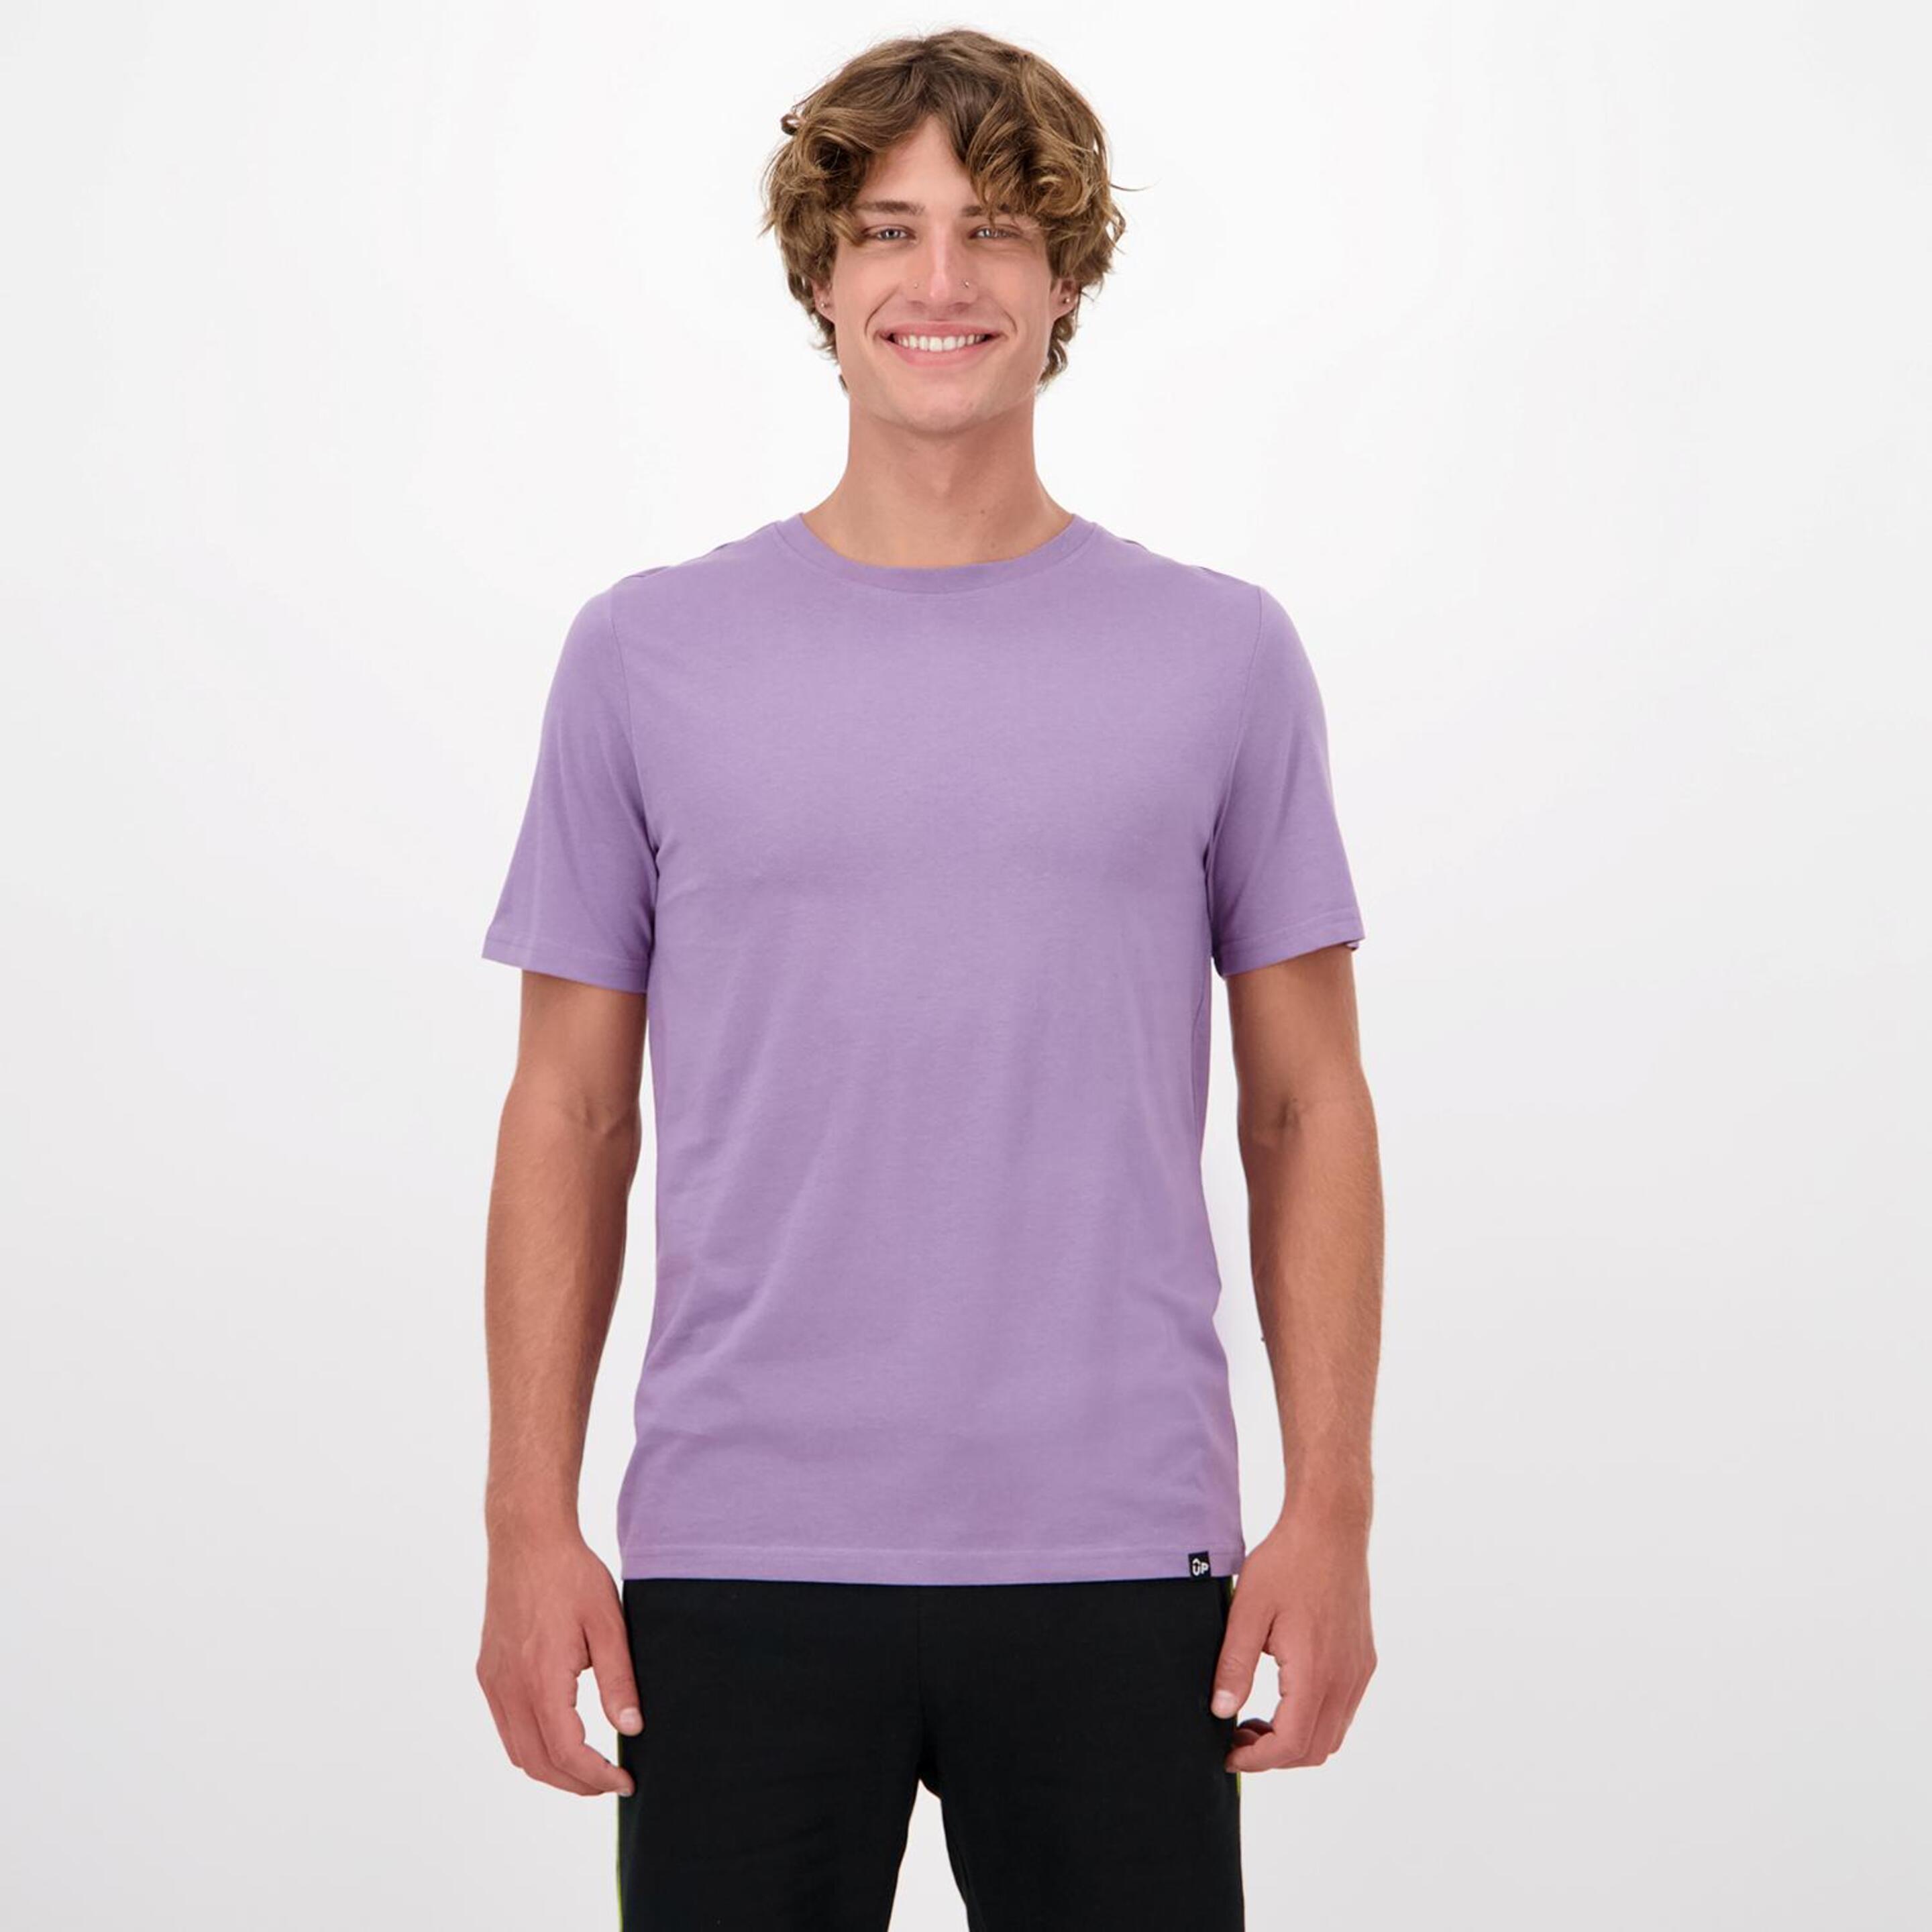 Up Basic - morado - Camiseta Hombre